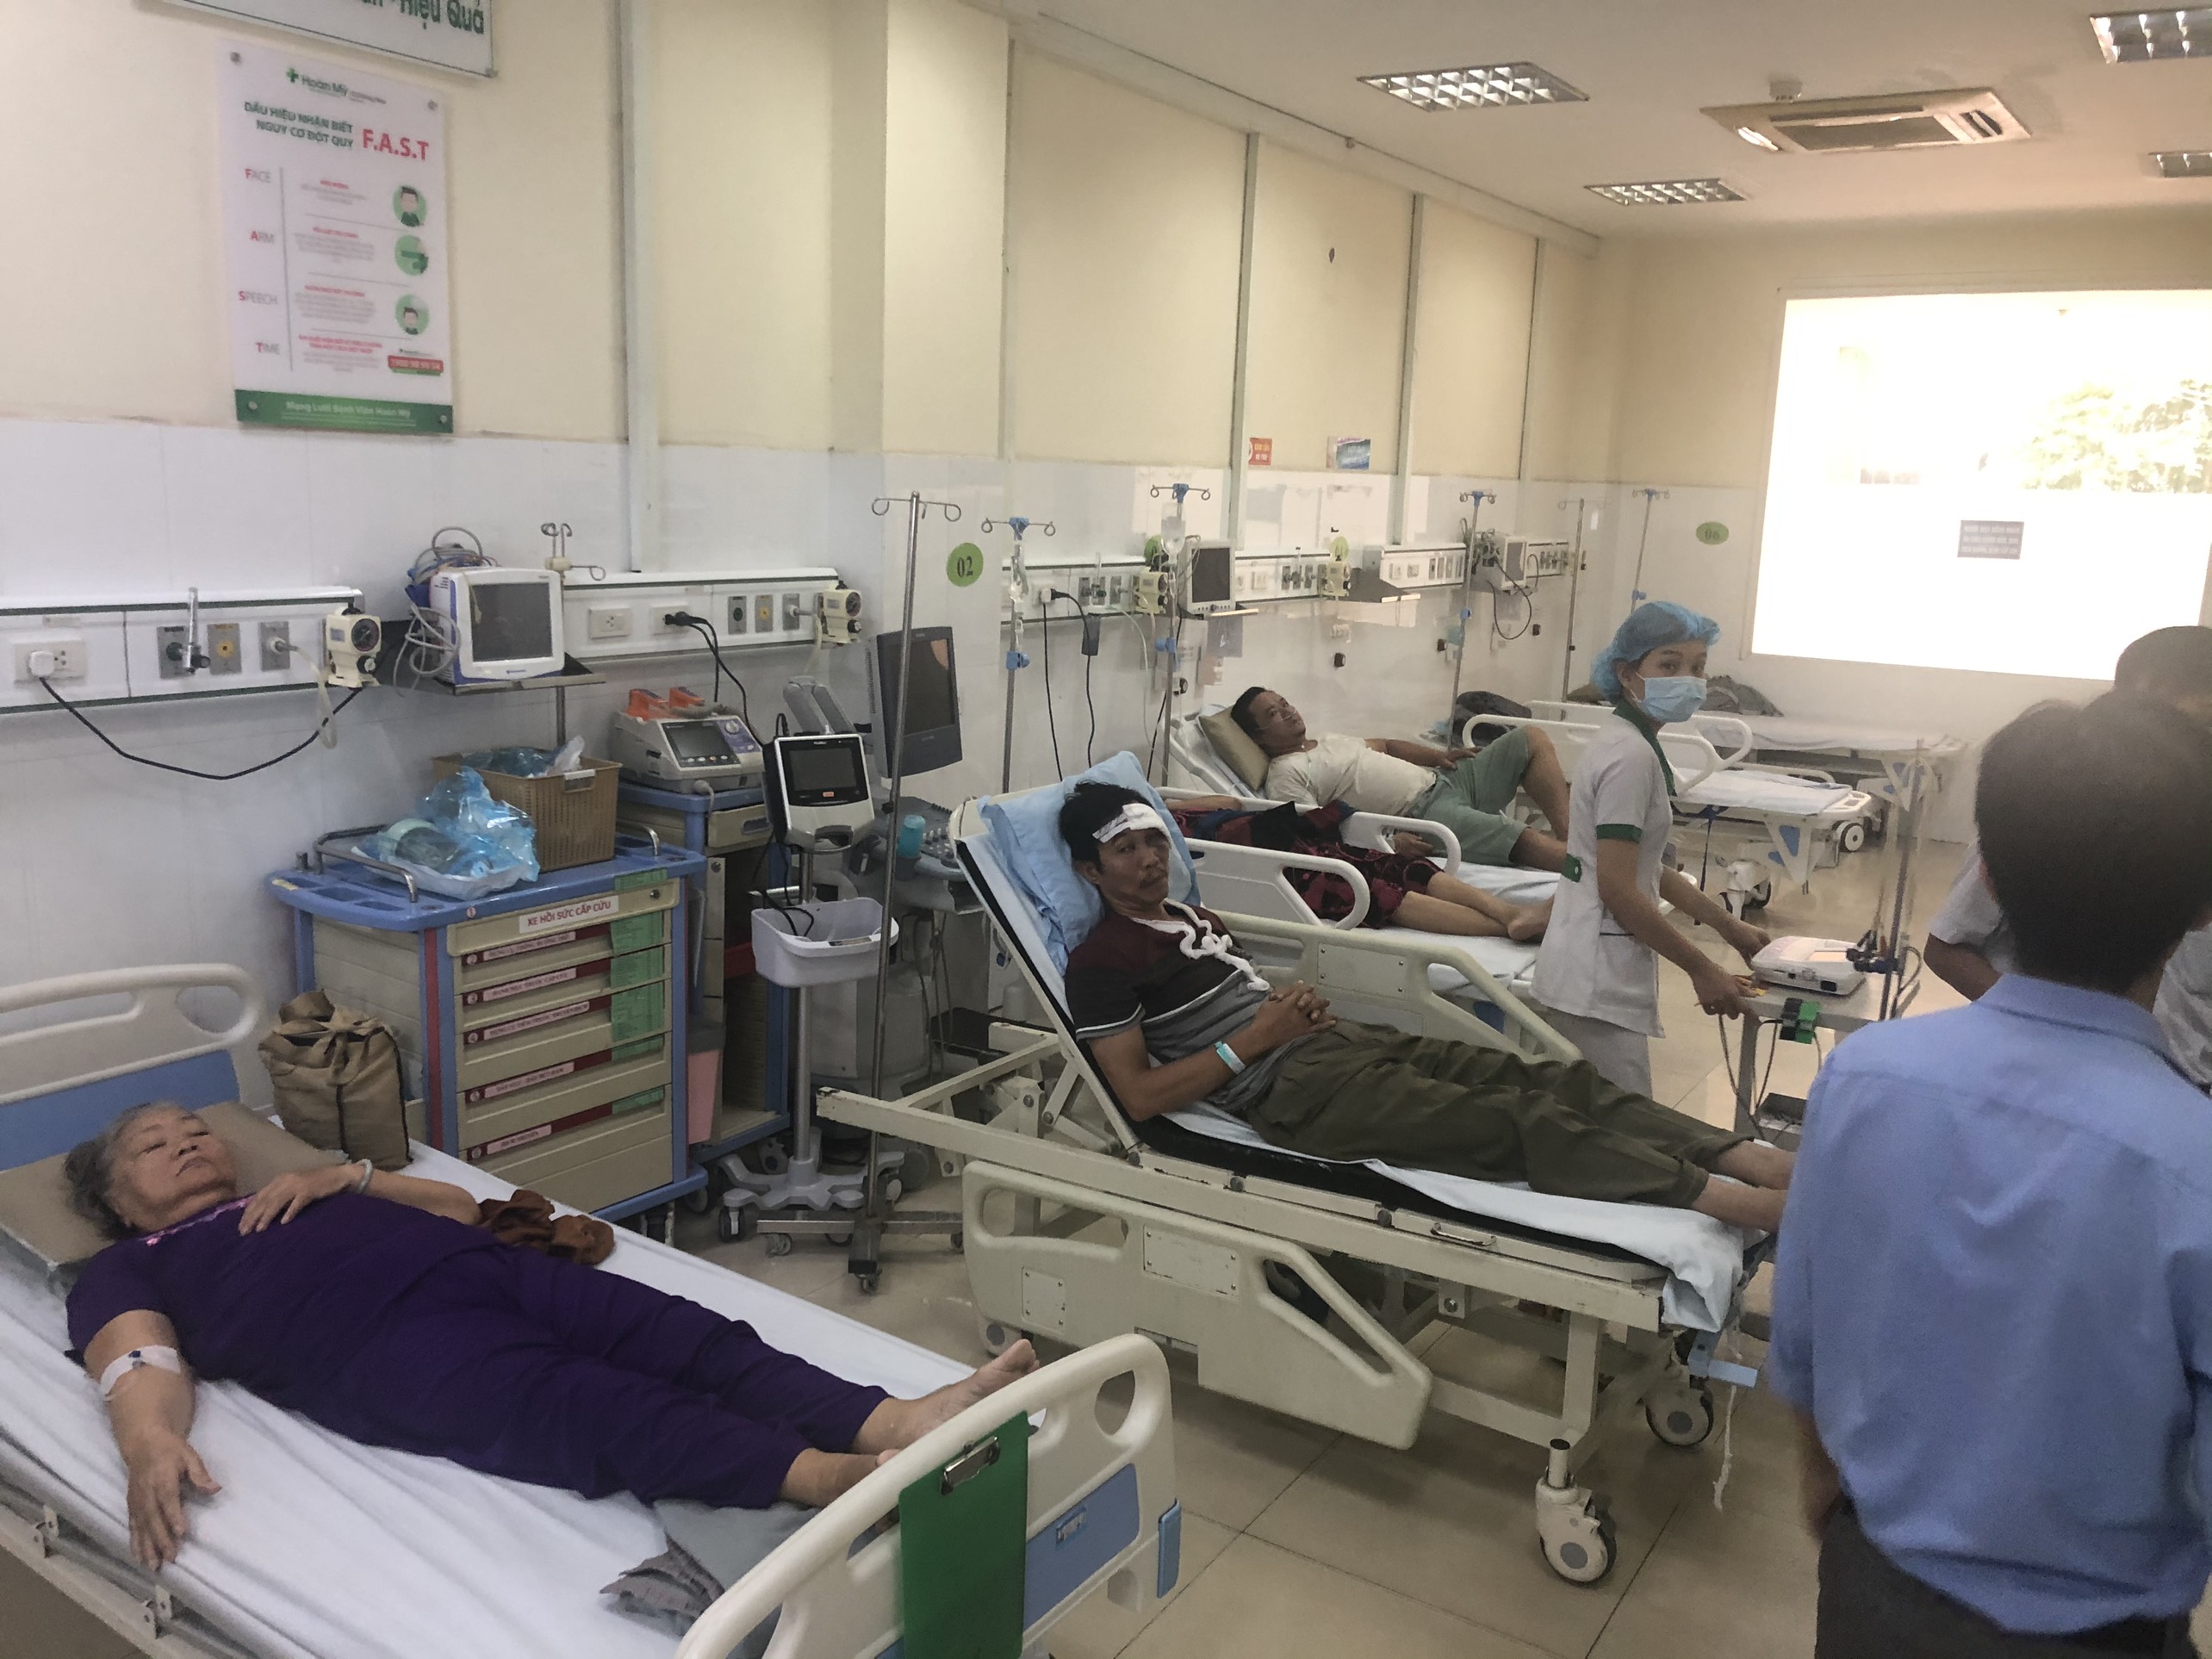 Bệnh nhân được đưa vào bệnh viện cấp cứu trong tình trạng không còn tỉnh táo